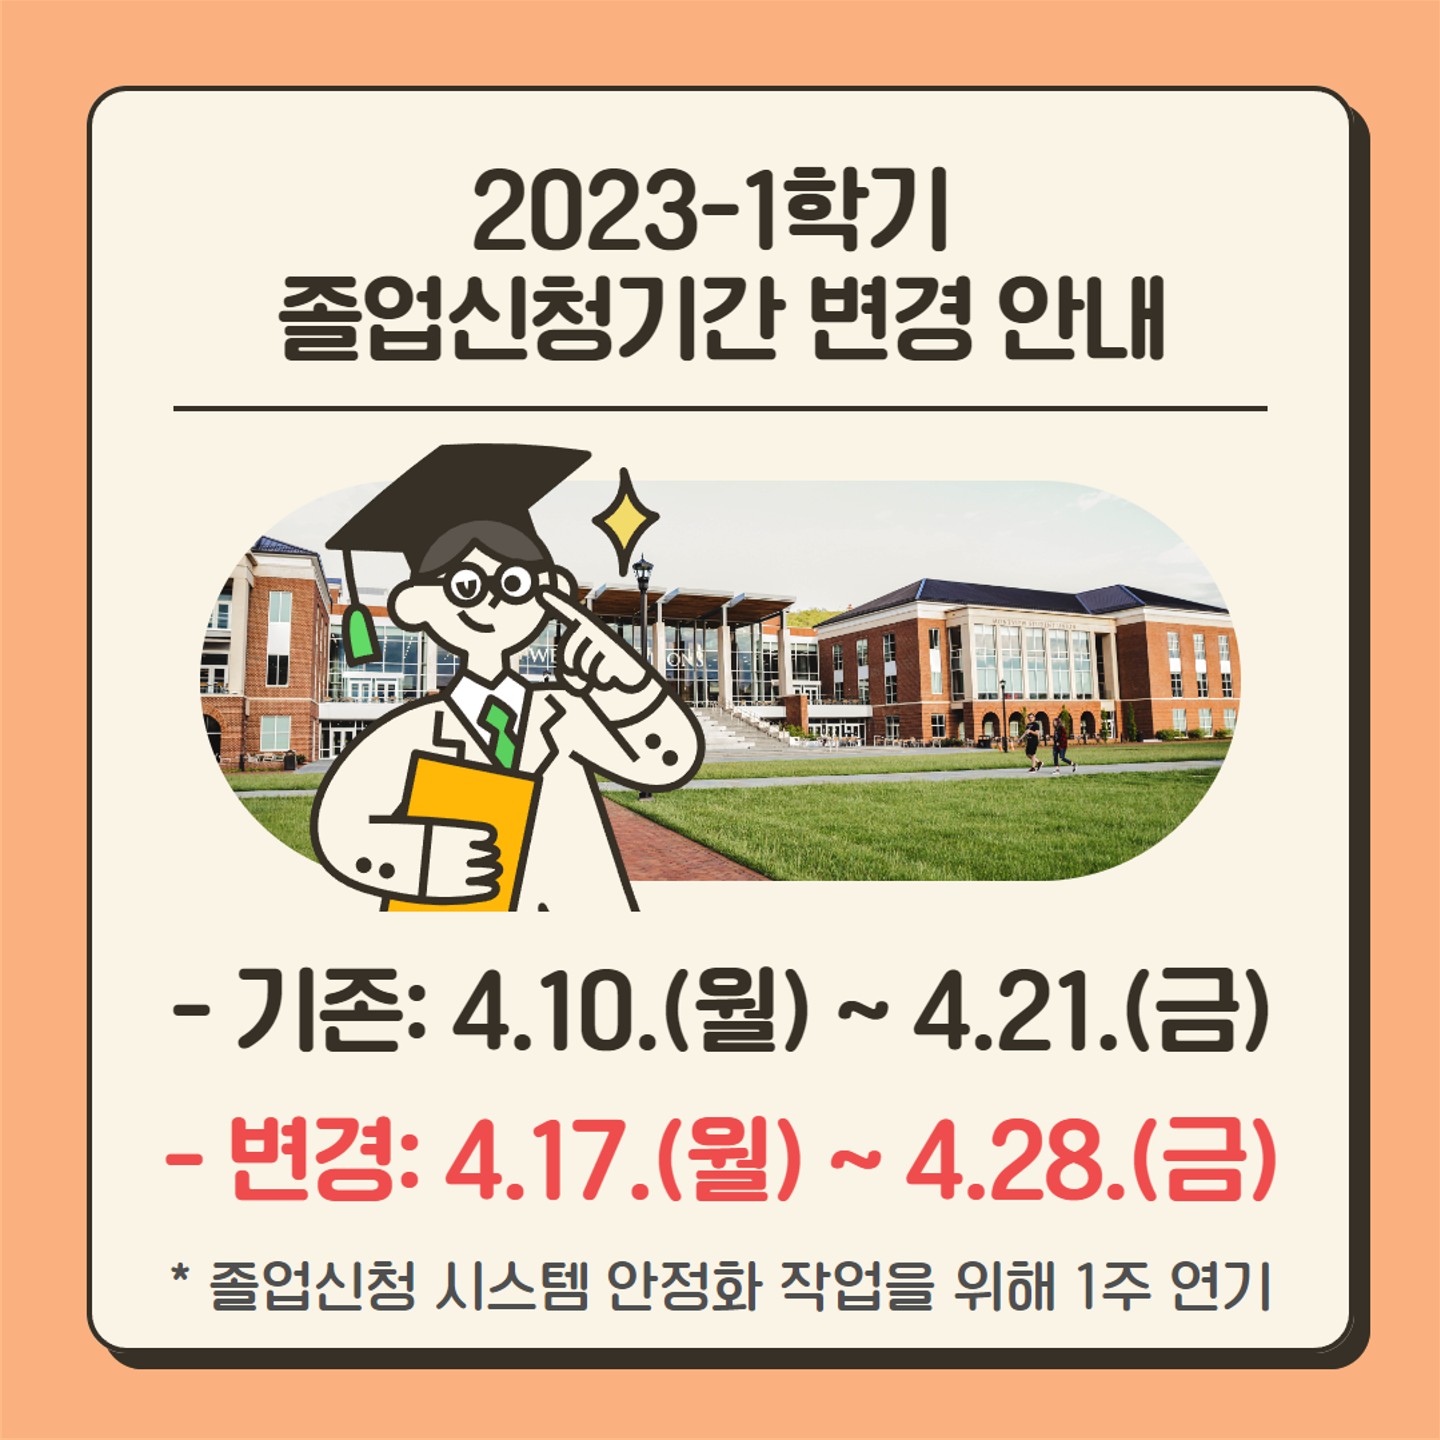 2023-1학기 졸업신청기간 변경 안내